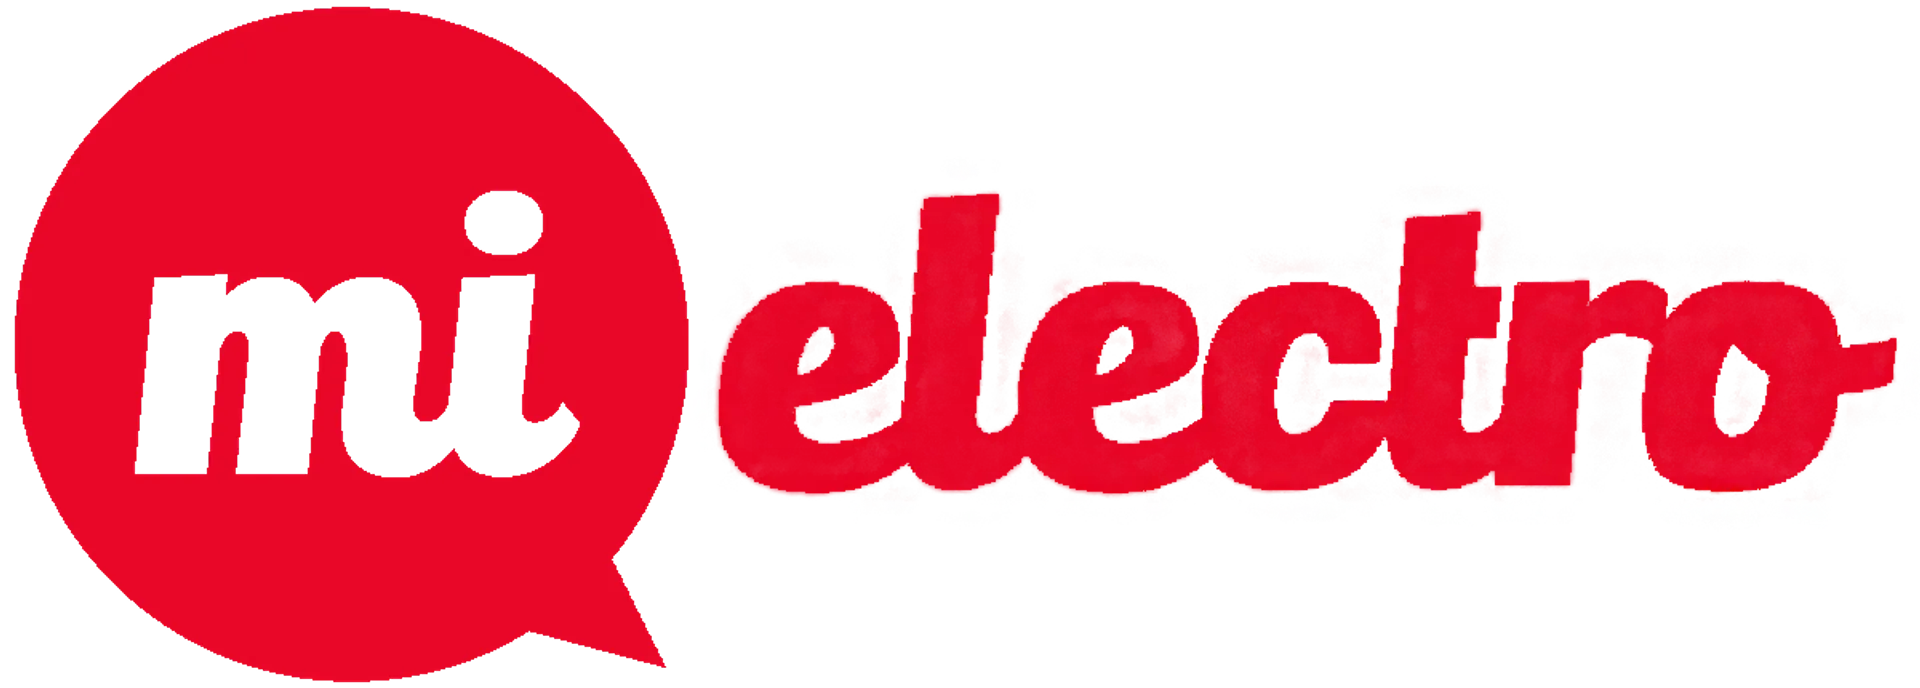 MI ELECTRO logo